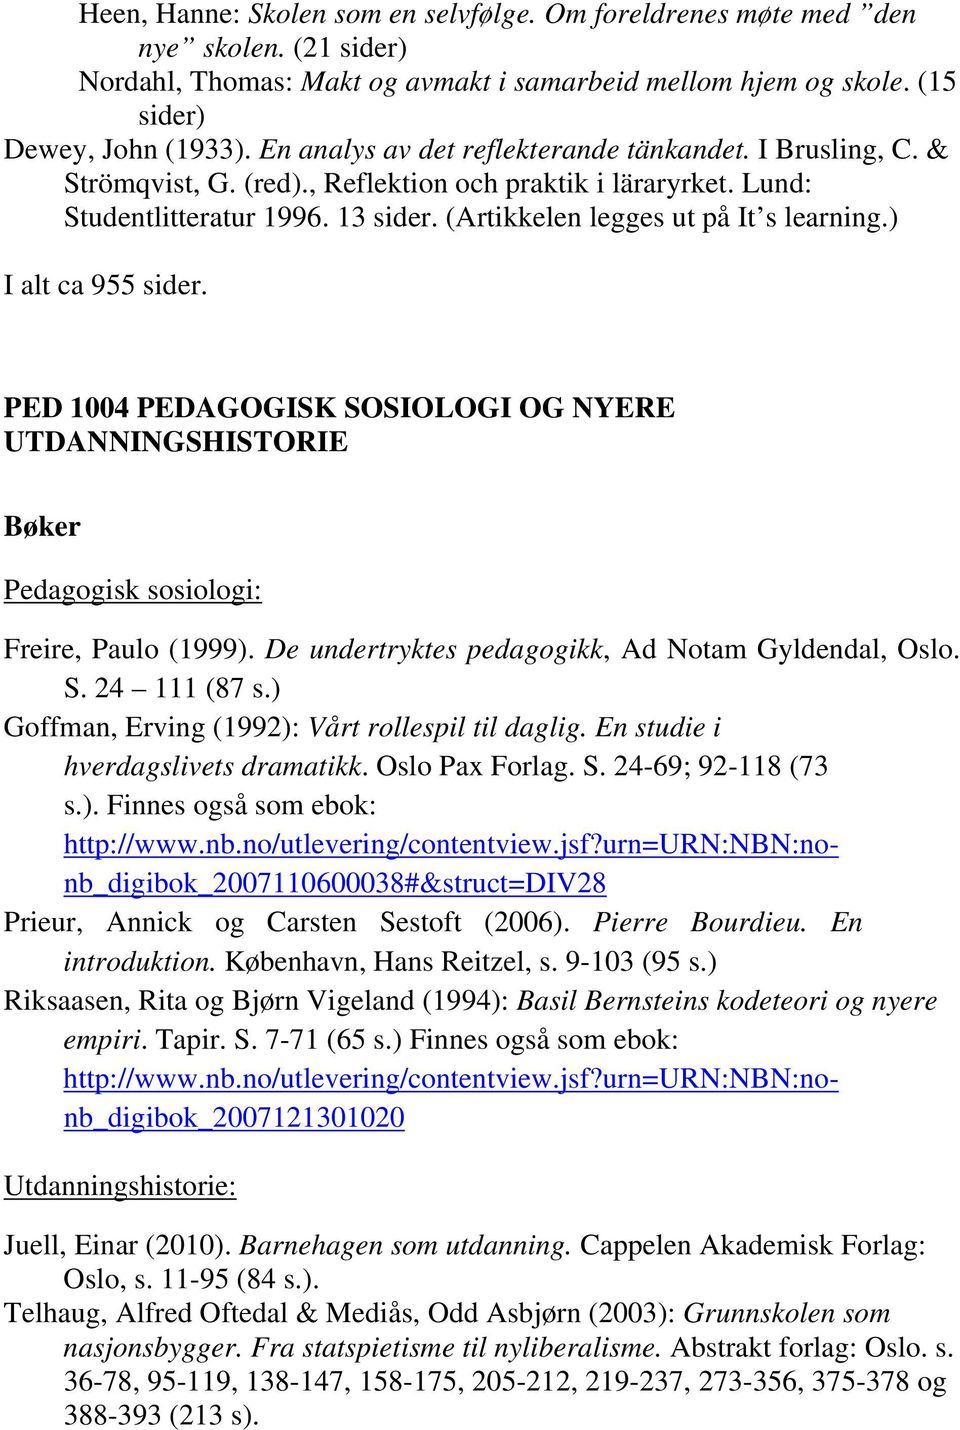 ) I alt ca 955 sider. PED 1004 PEDAGOGISK SOSIOLOGI OG NYERE UTDANNINGSHISTORIE Bøker Pedagogisk sosiologi: Freire, Paulo (1999). De undertryktes pedagogikk, Ad Notam Gyldendal, Oslo. S. 24 111 (87 s.